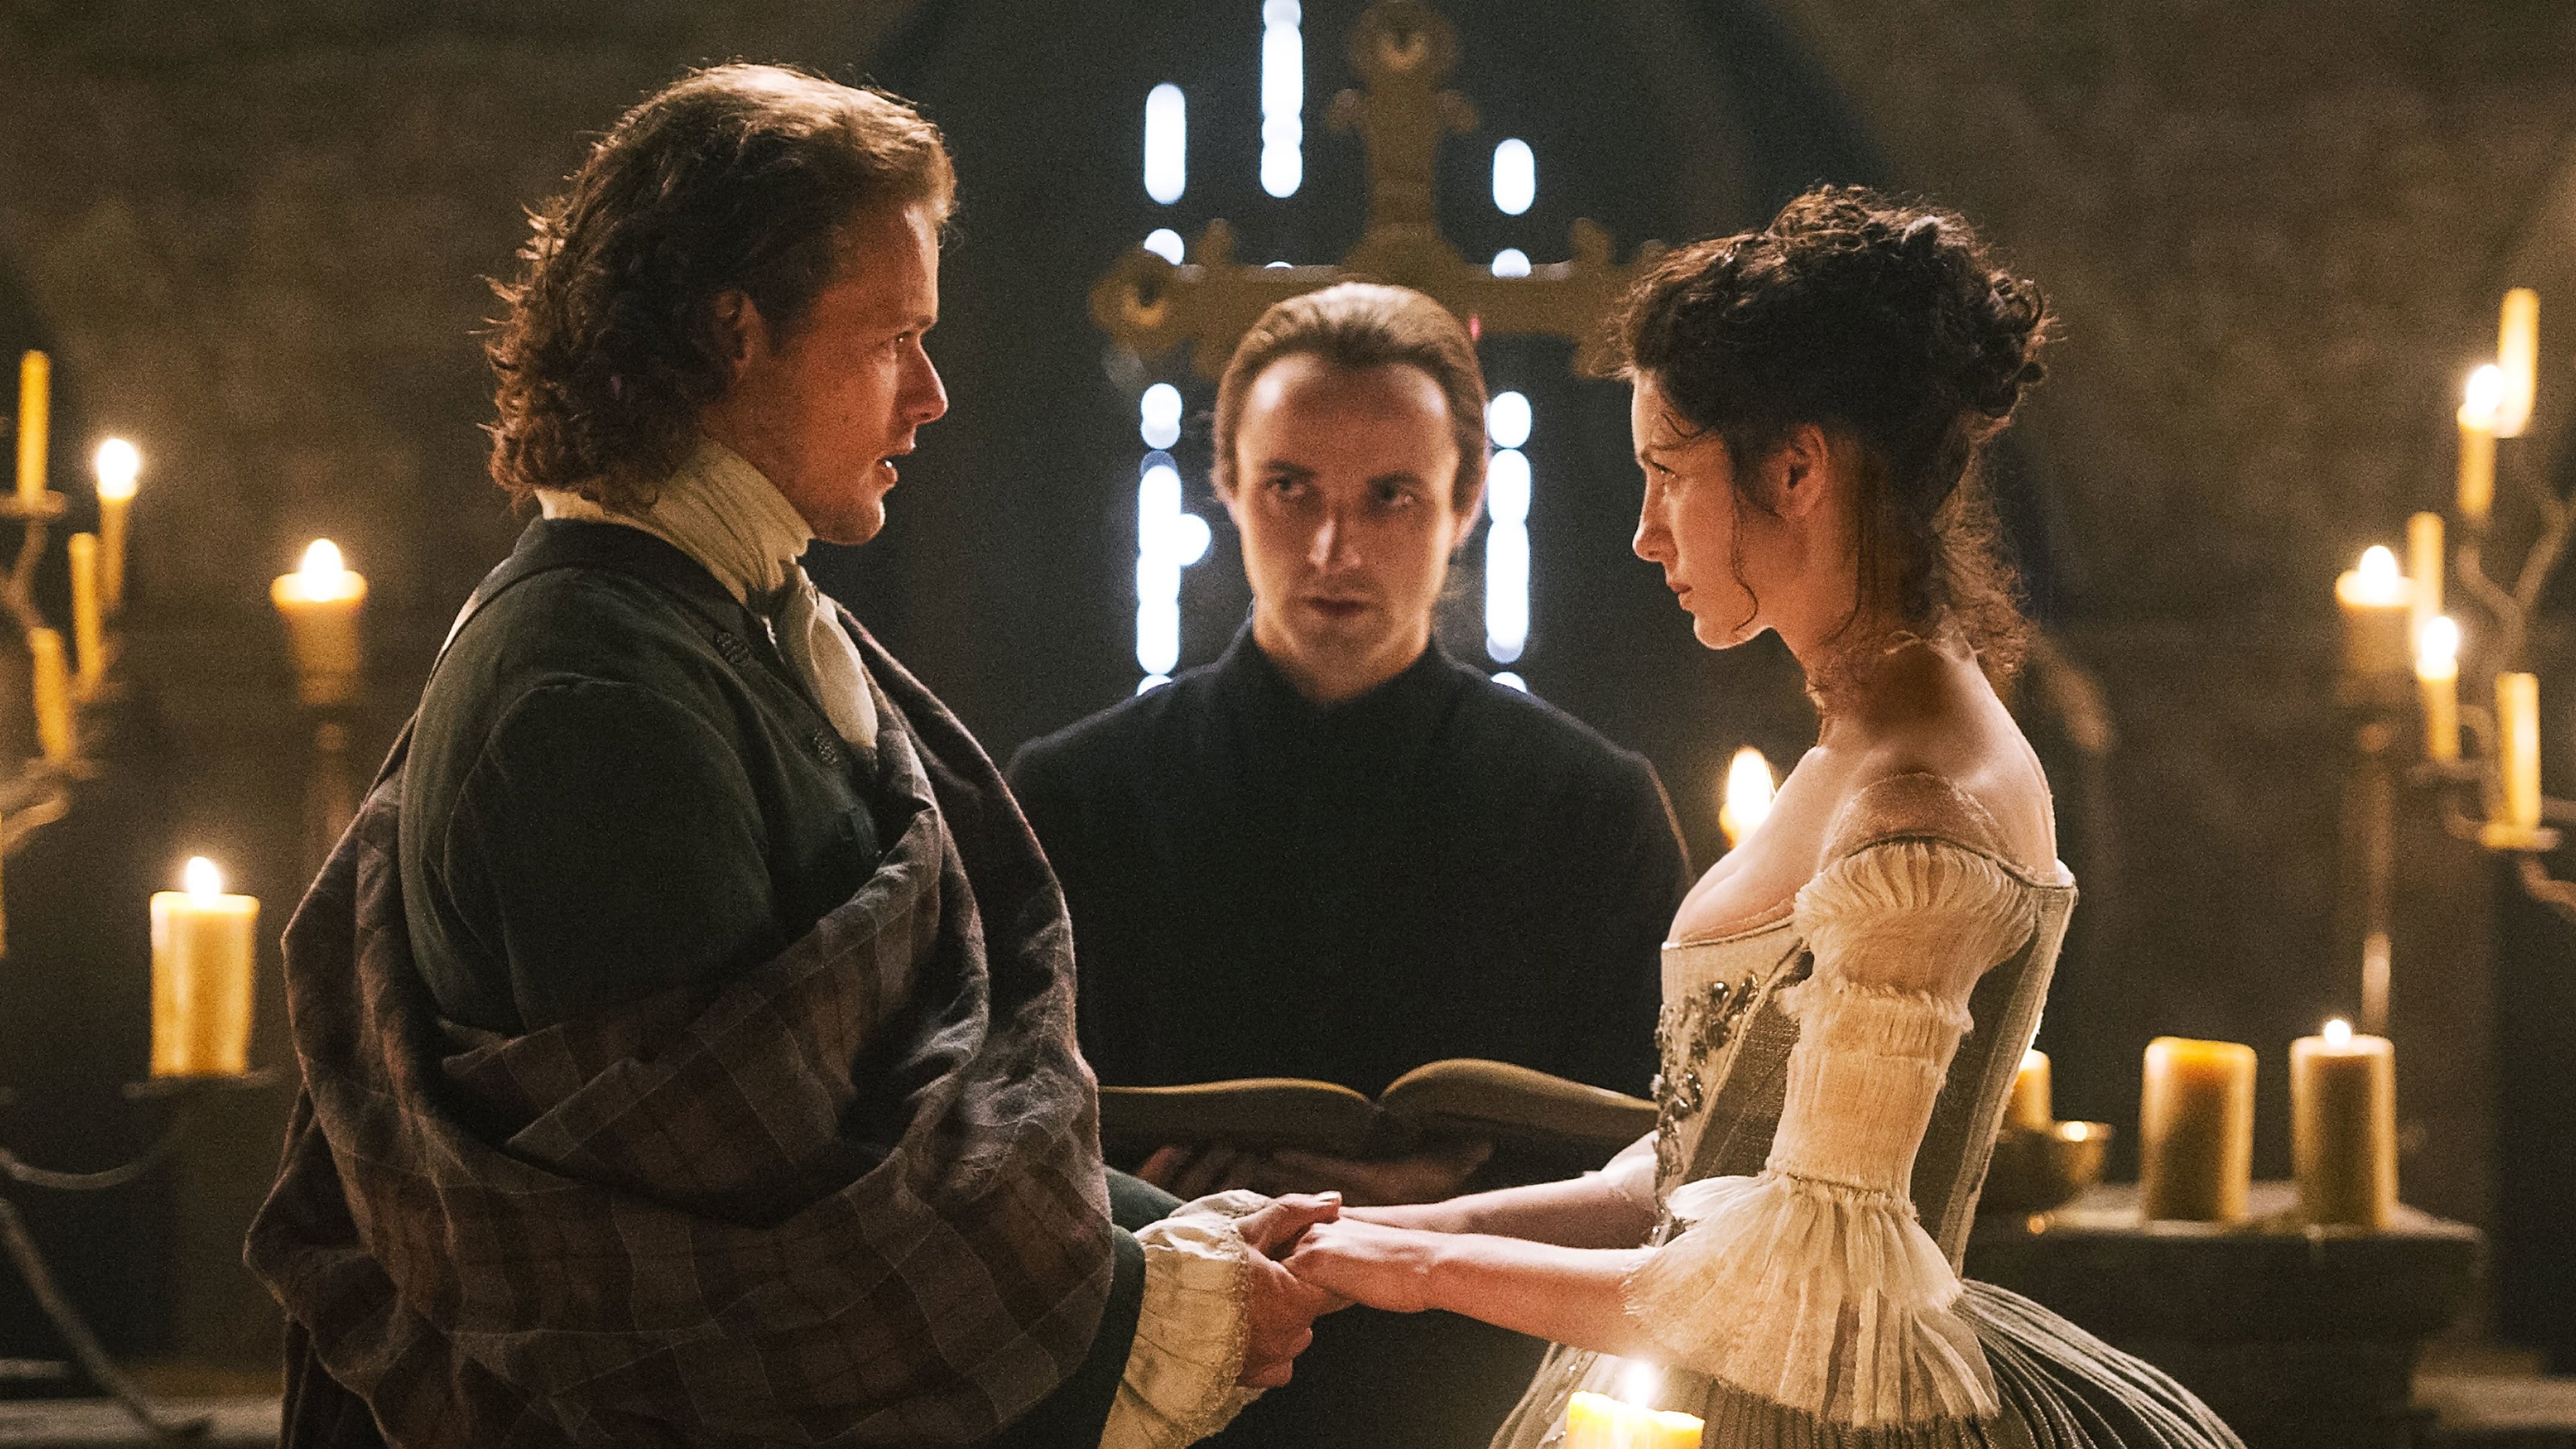 Outlander: Season 1-Episode 7 Openload Watch Online Full Episode Free